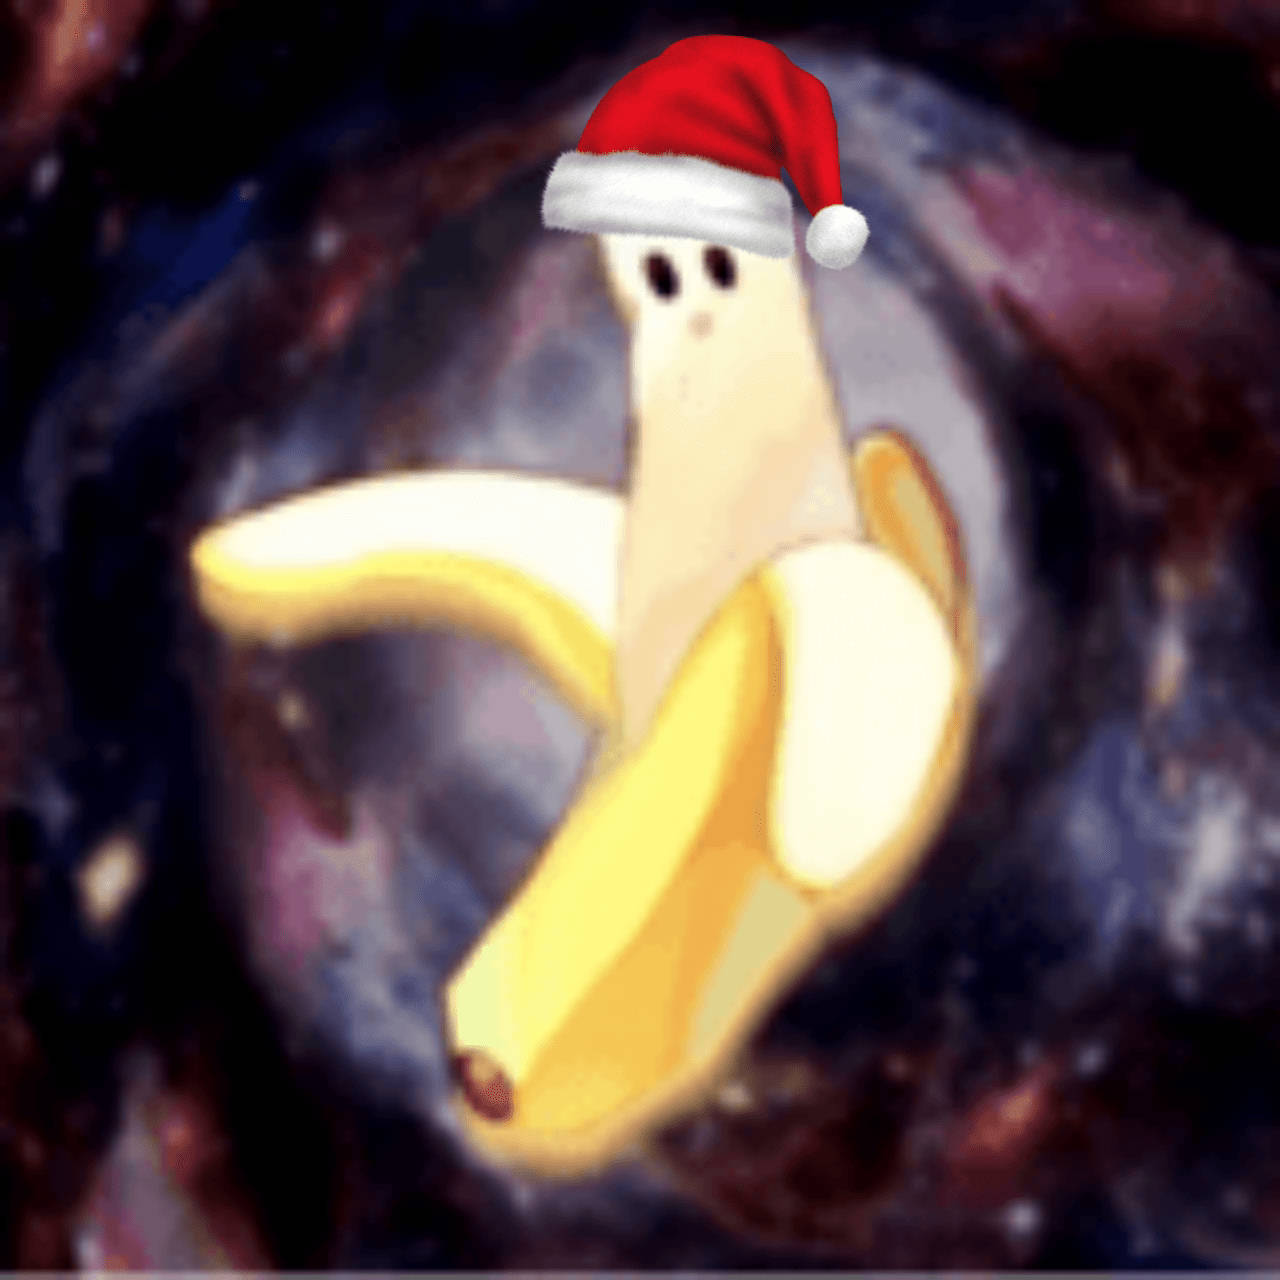 Jule PFP af skrællet banan. Wallpaper